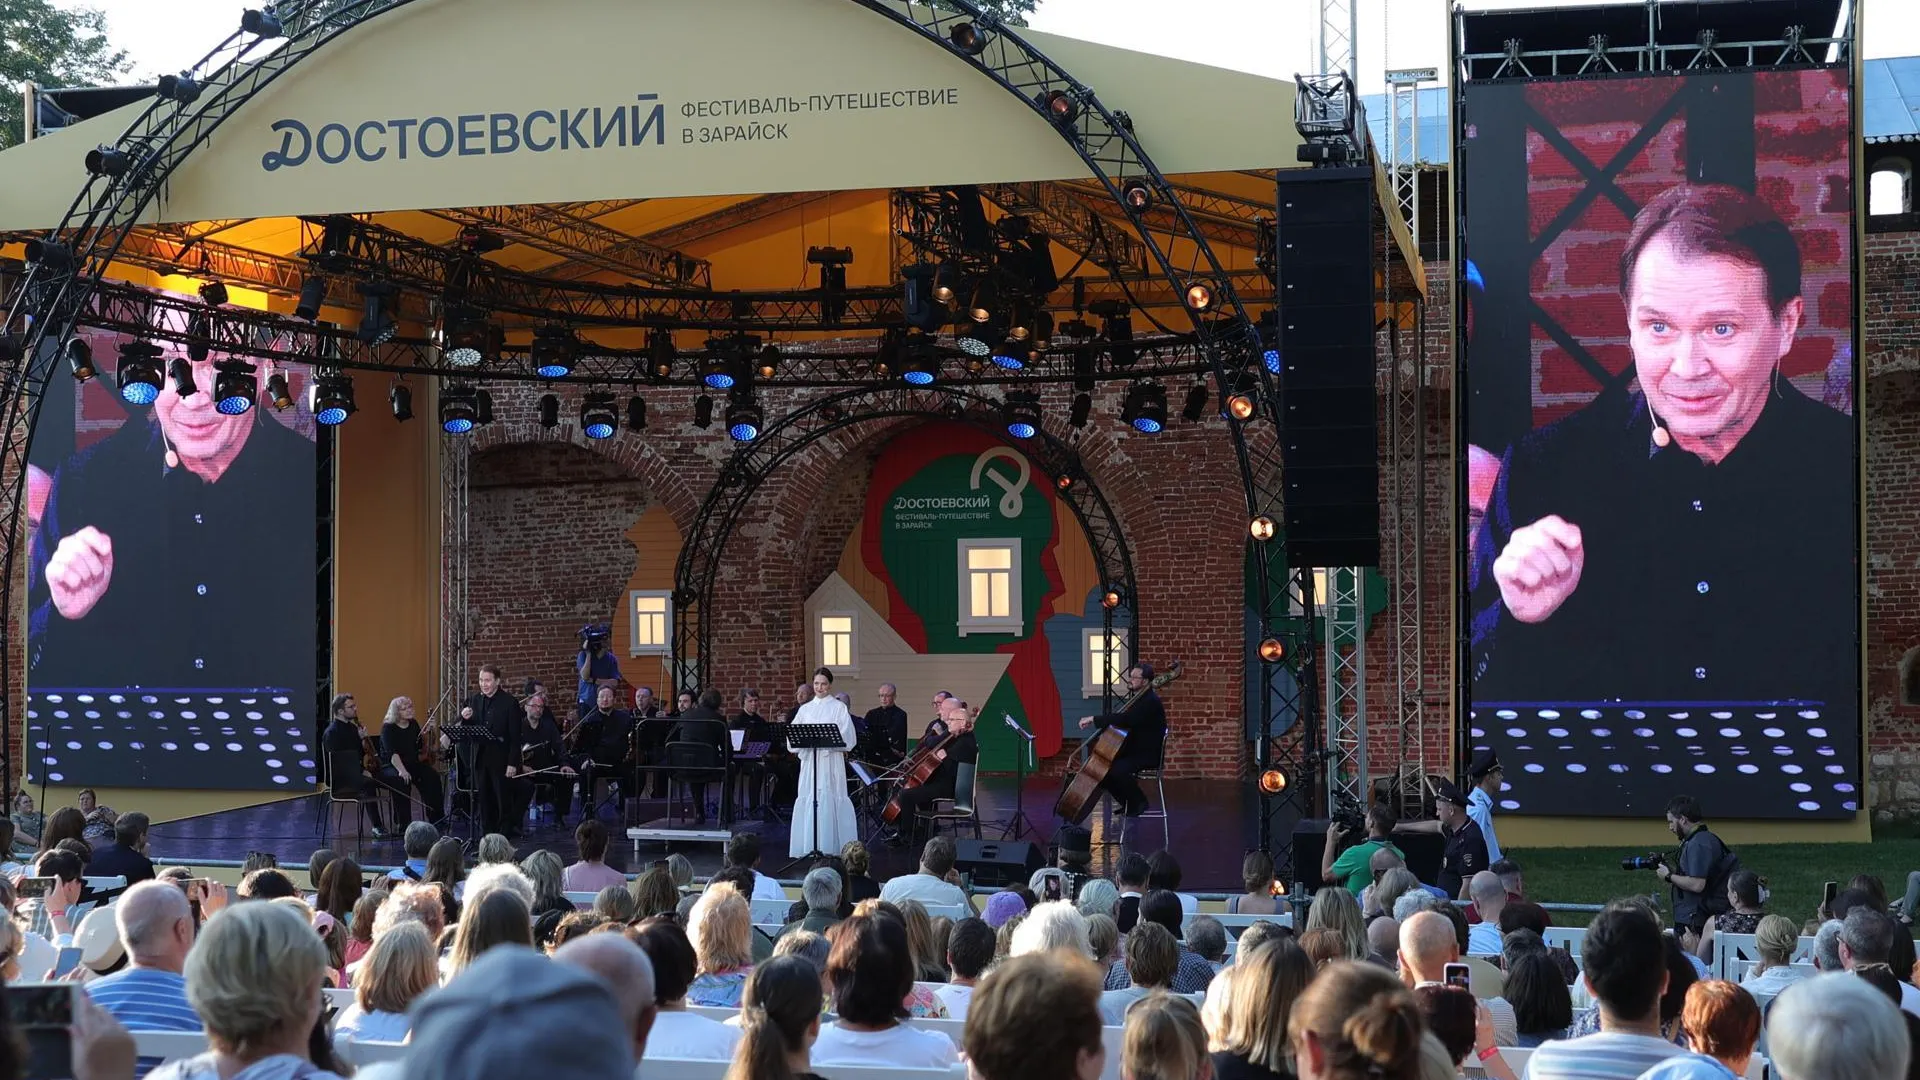 В Подмосковье прошел масштабный фестиваль, посвященный Достоевскому